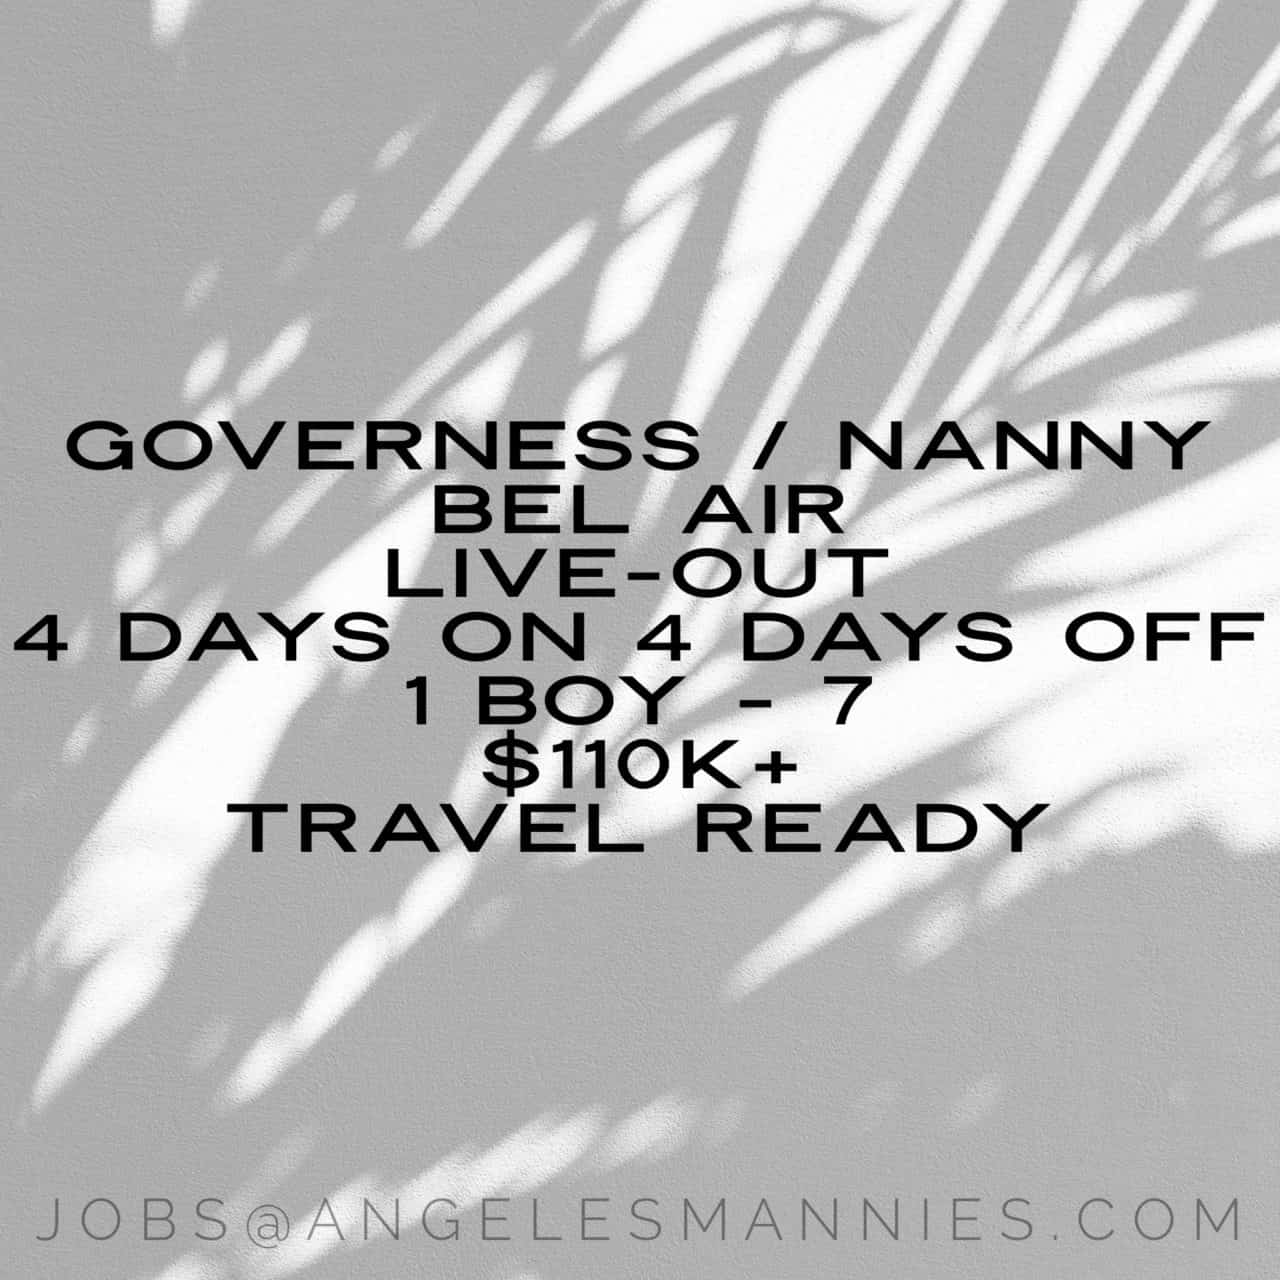 Nanny / Governess